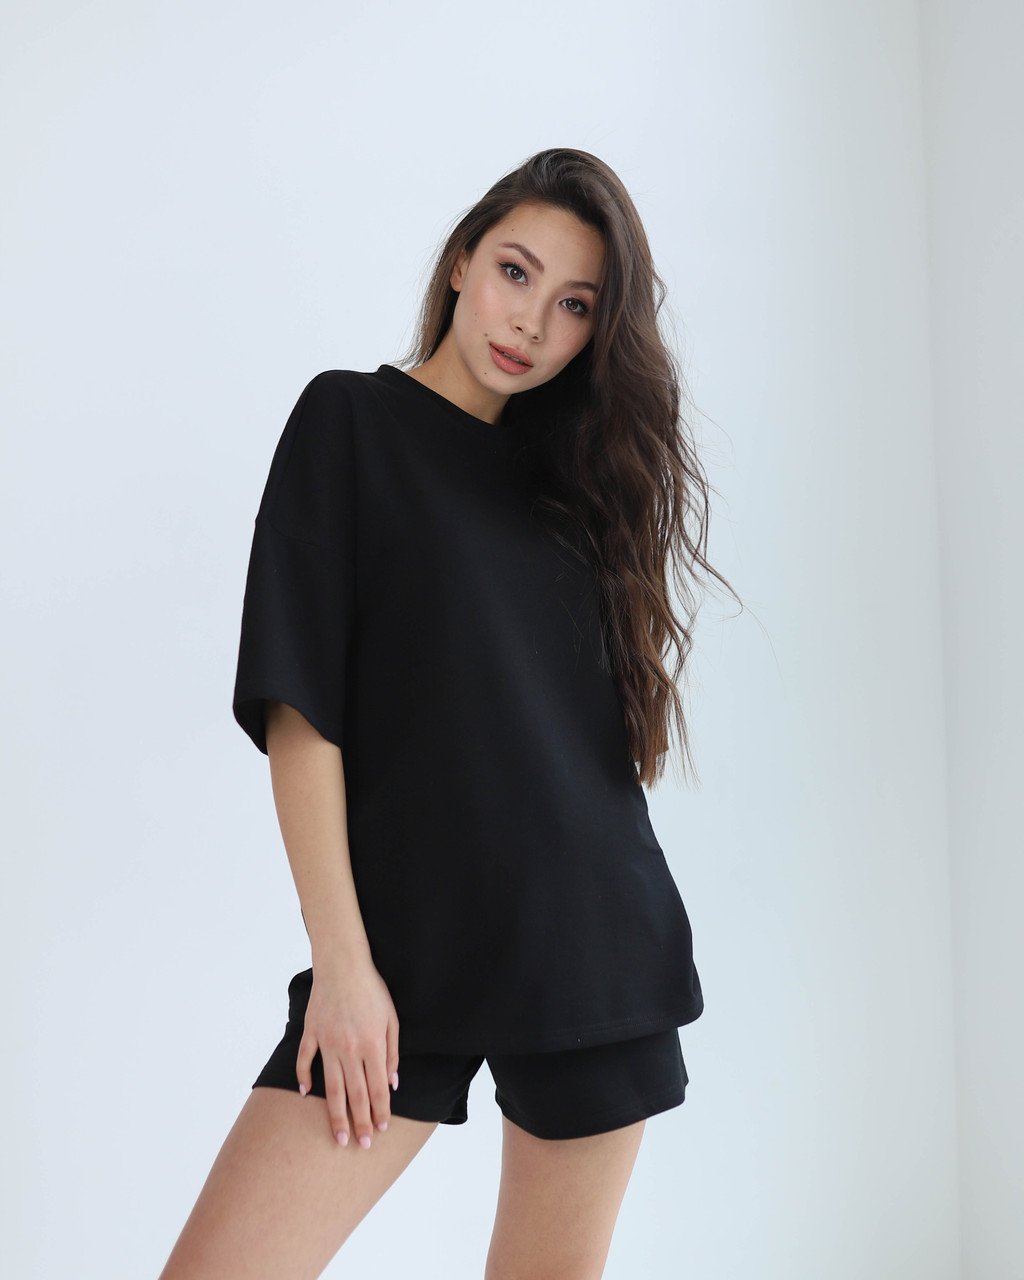 Літній комплект футболка і шорти жіночий чорний оверсайз модель Мія від бренду Тур, розміри: S, M, L TURWEAR